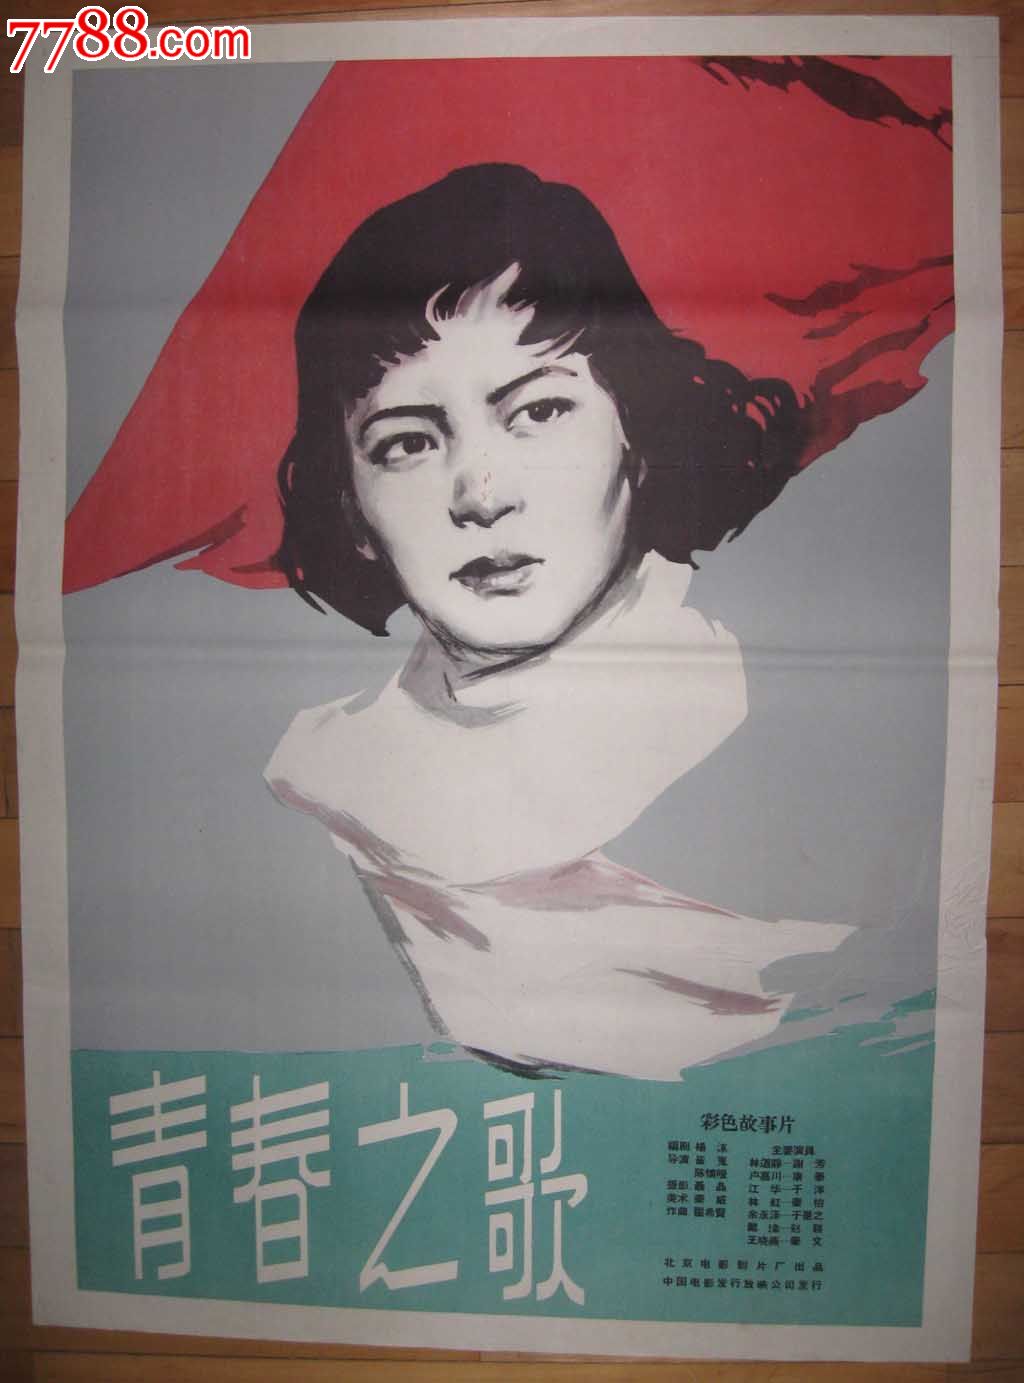 50年代电影海报《青春之歌》主演:谢芳,康泰,于洋等,北京电影制片厂